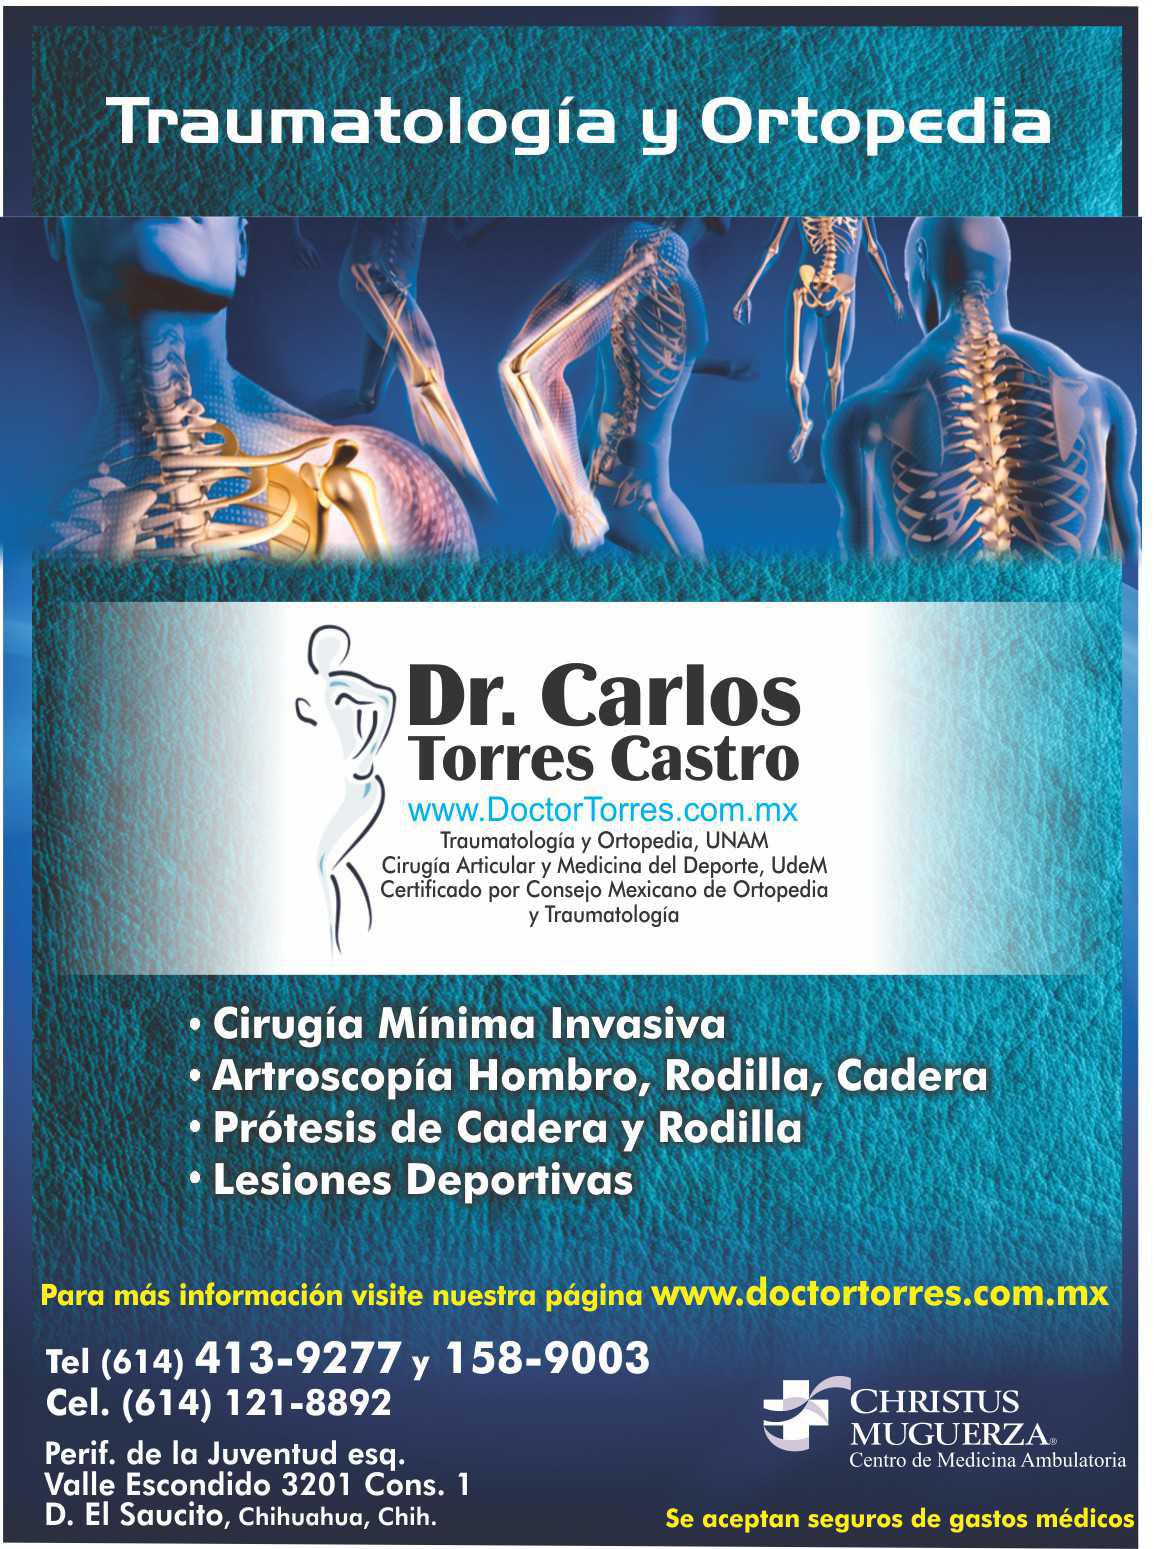 Dr. Carlos Torres Castro